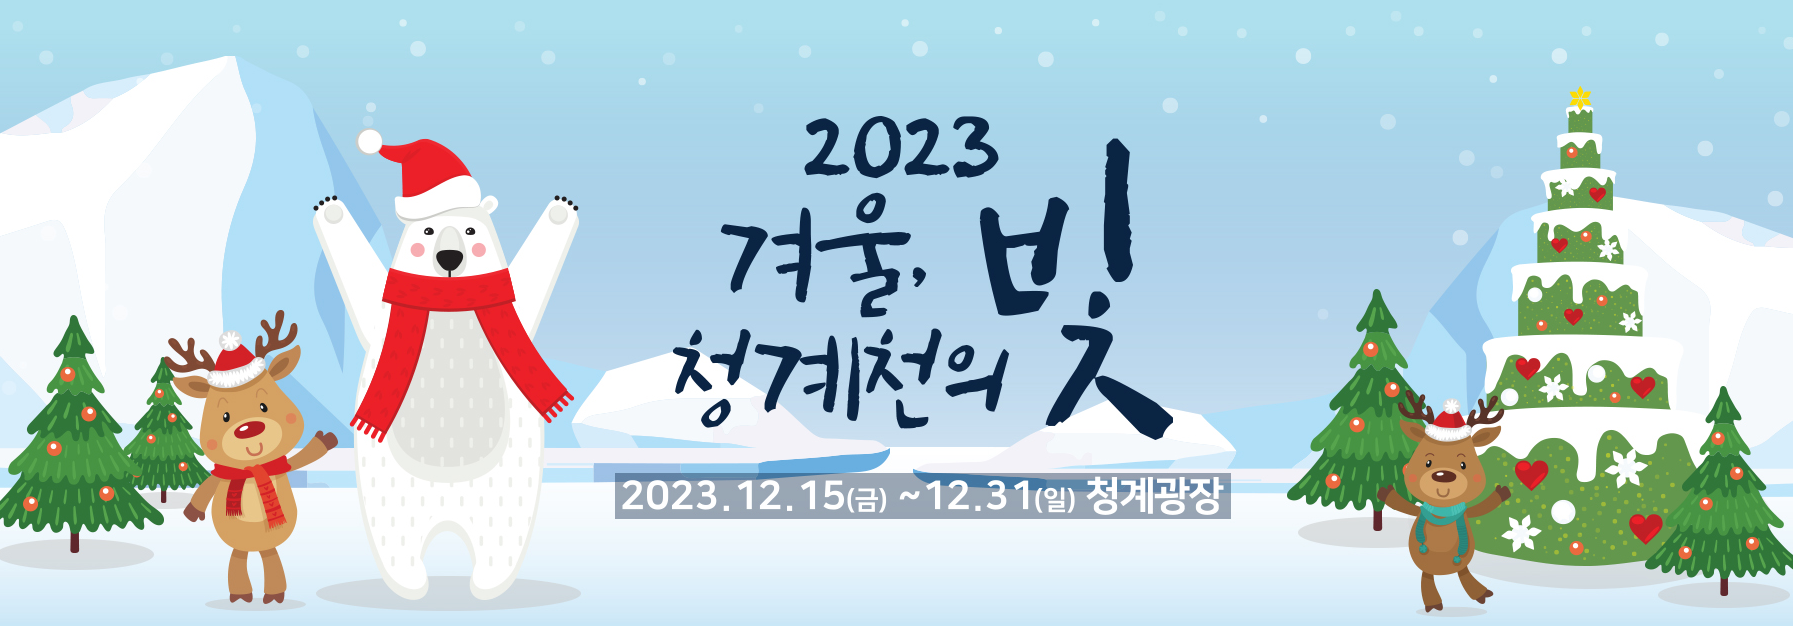 2023 겨울 청계천의 빛 행사 안내 포스터